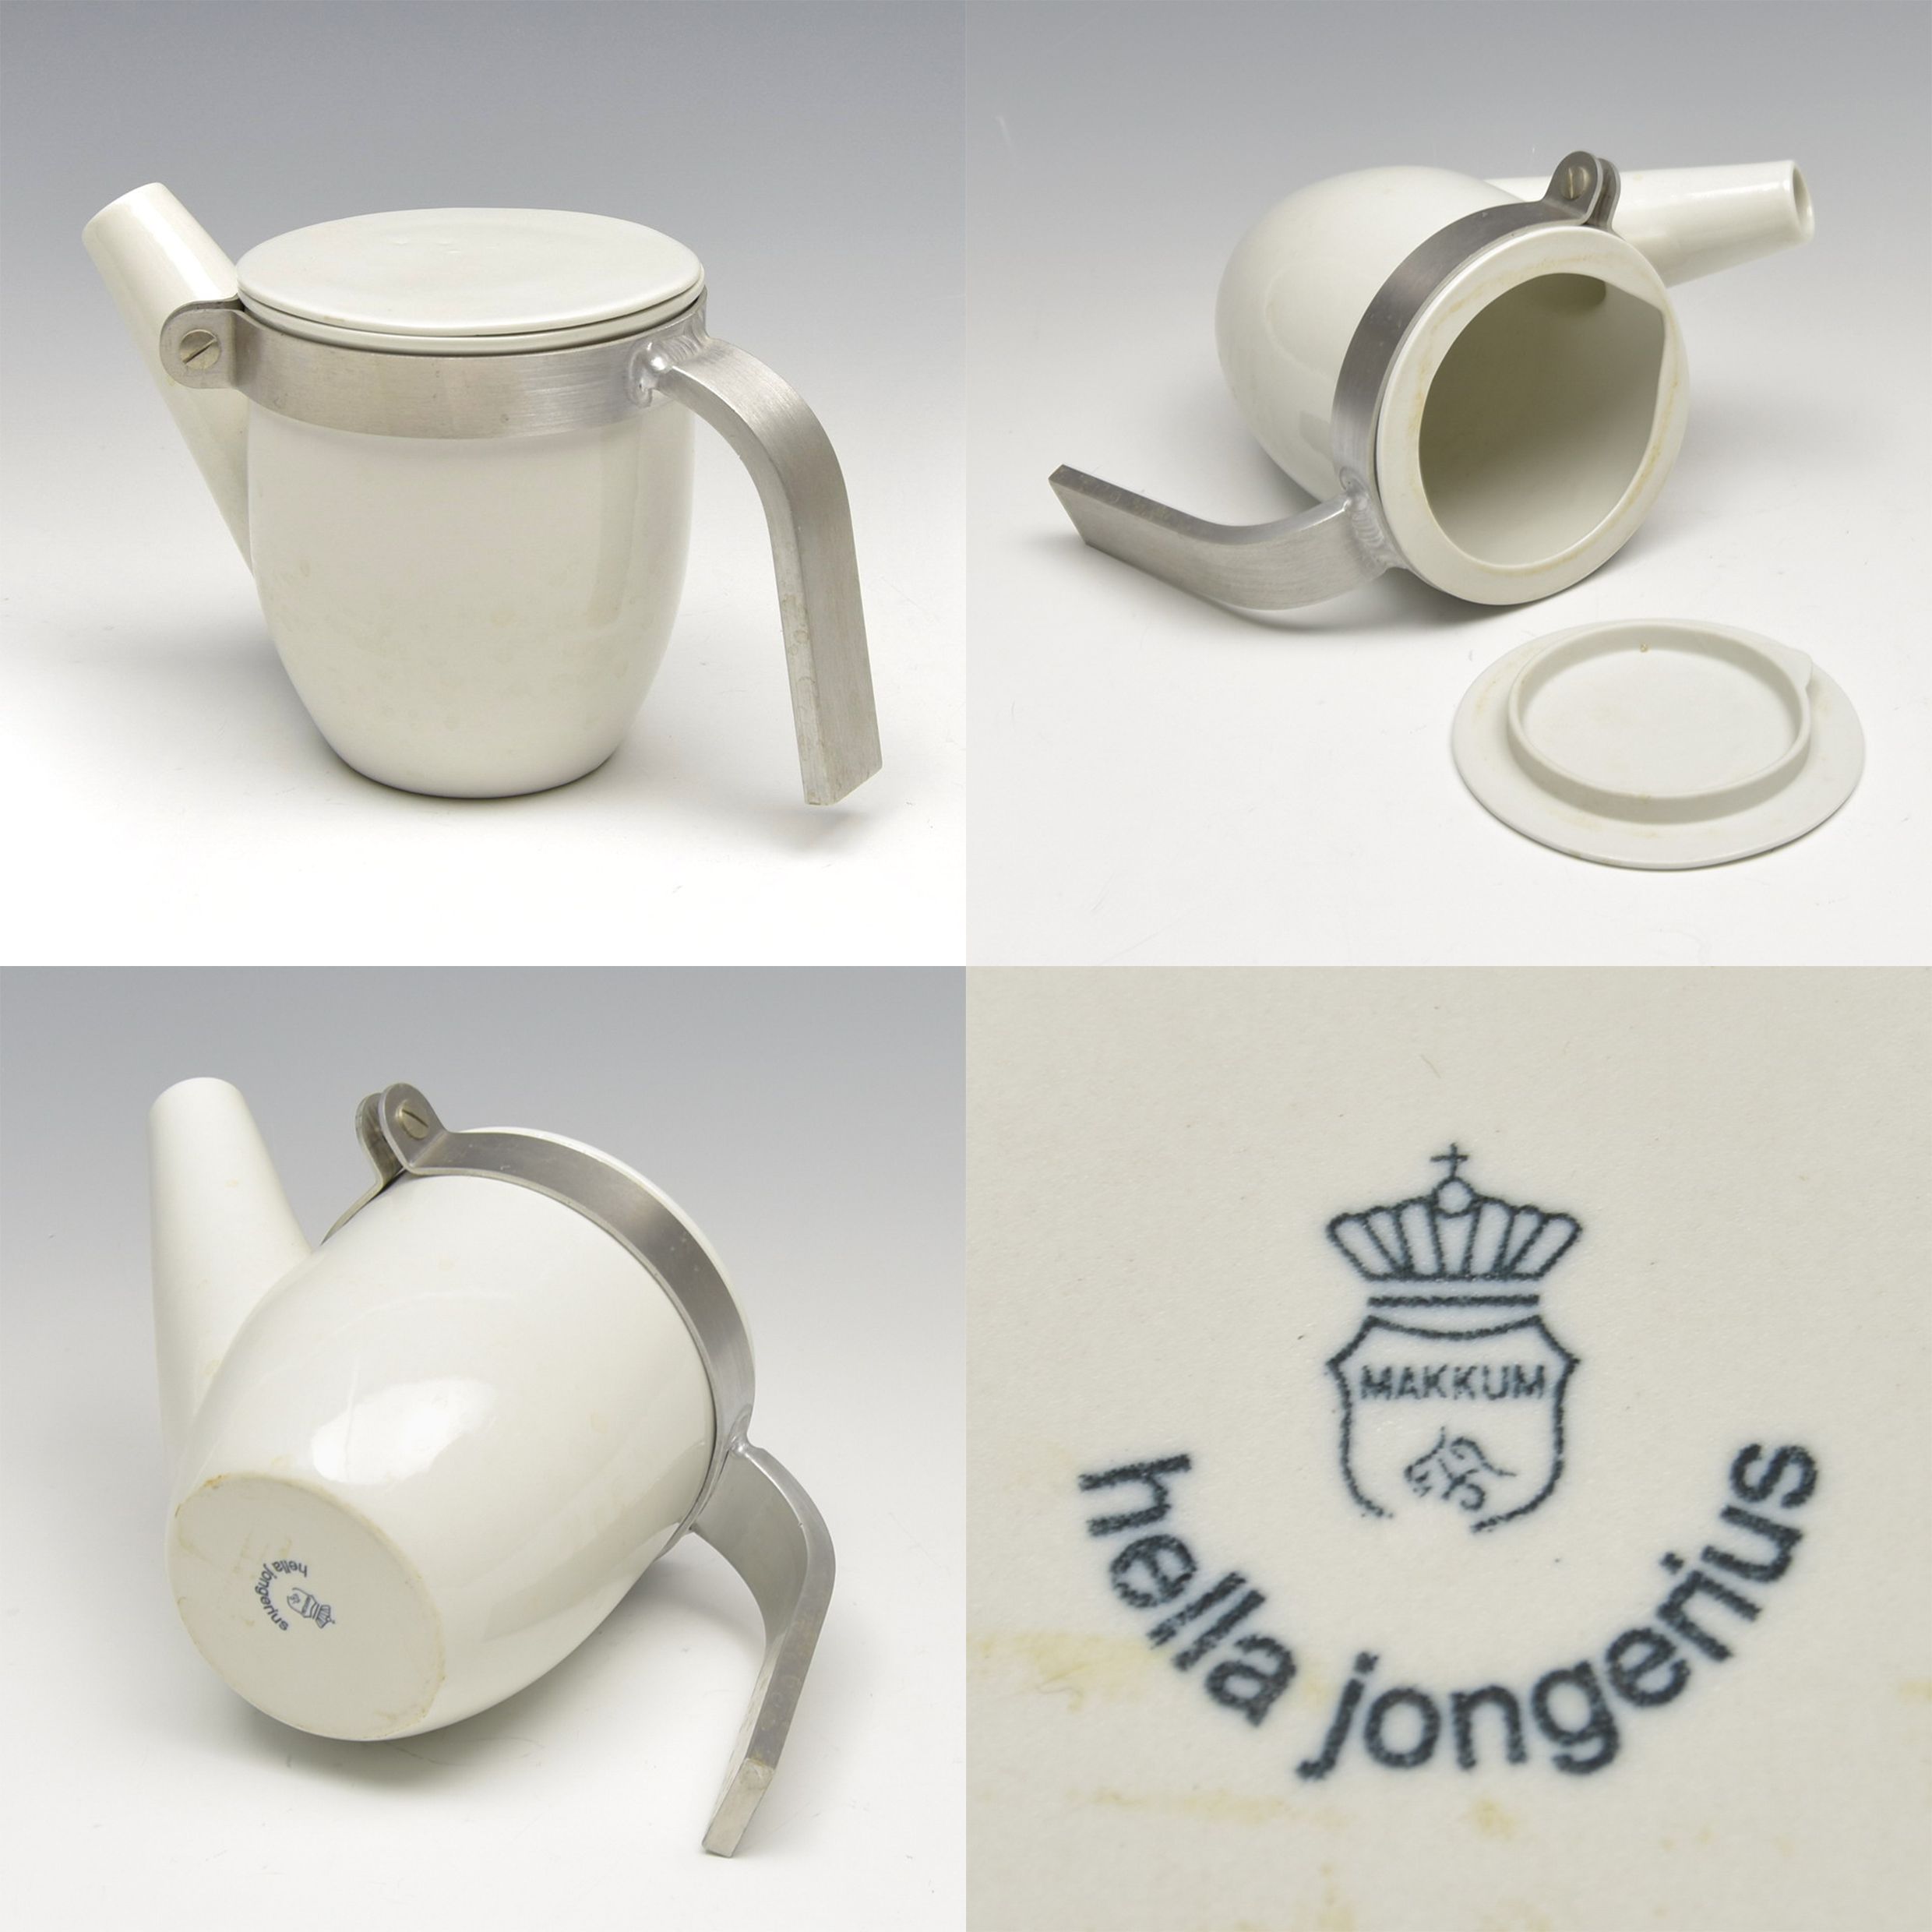 Porselen çaydanlık B-Set bardaklara eşlik edecek şekilde tasarlanmıştır.